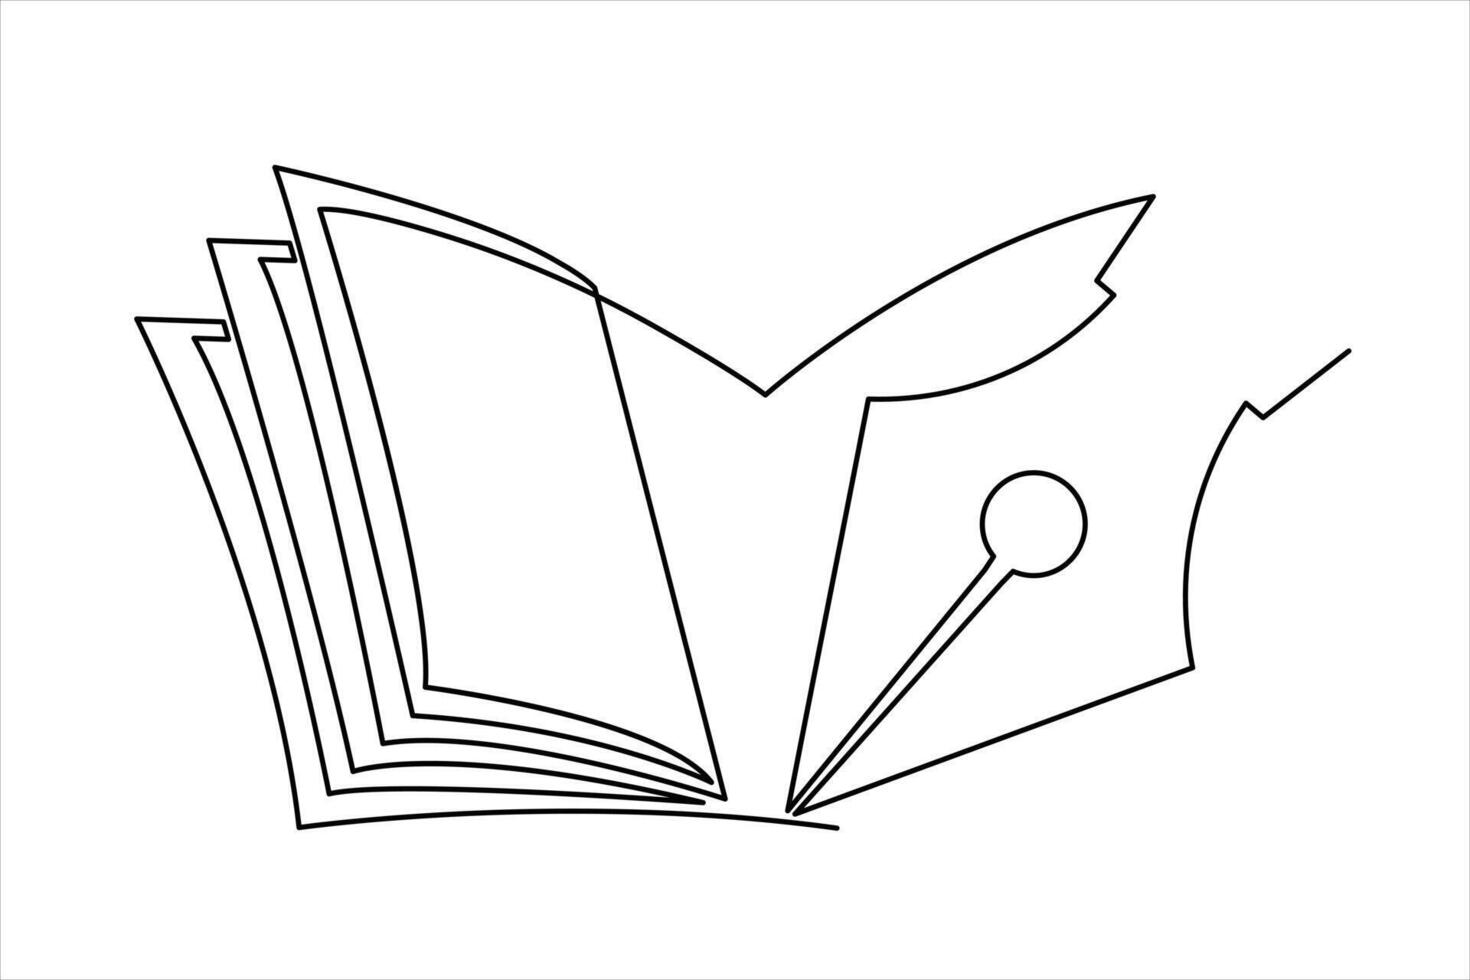 kontinuierlich einer Linie Buch mit Stift Zeichnung Gliederung Vektor Illustration und Welt Buch Tag Konzept Design.